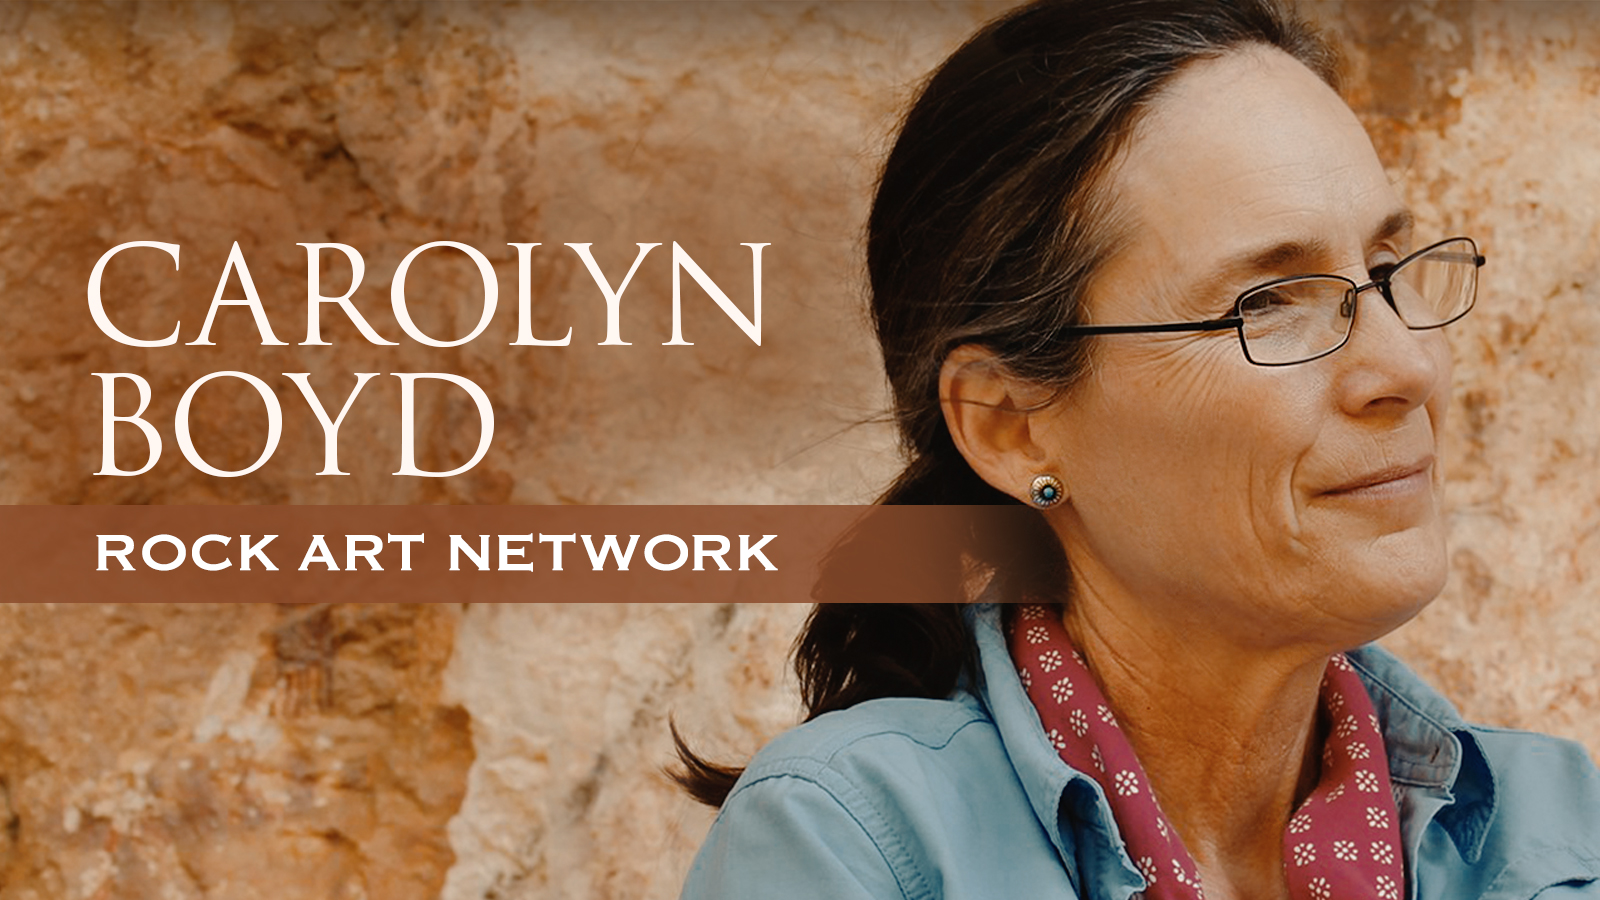 The Rock Art Network Carolyn Boyd